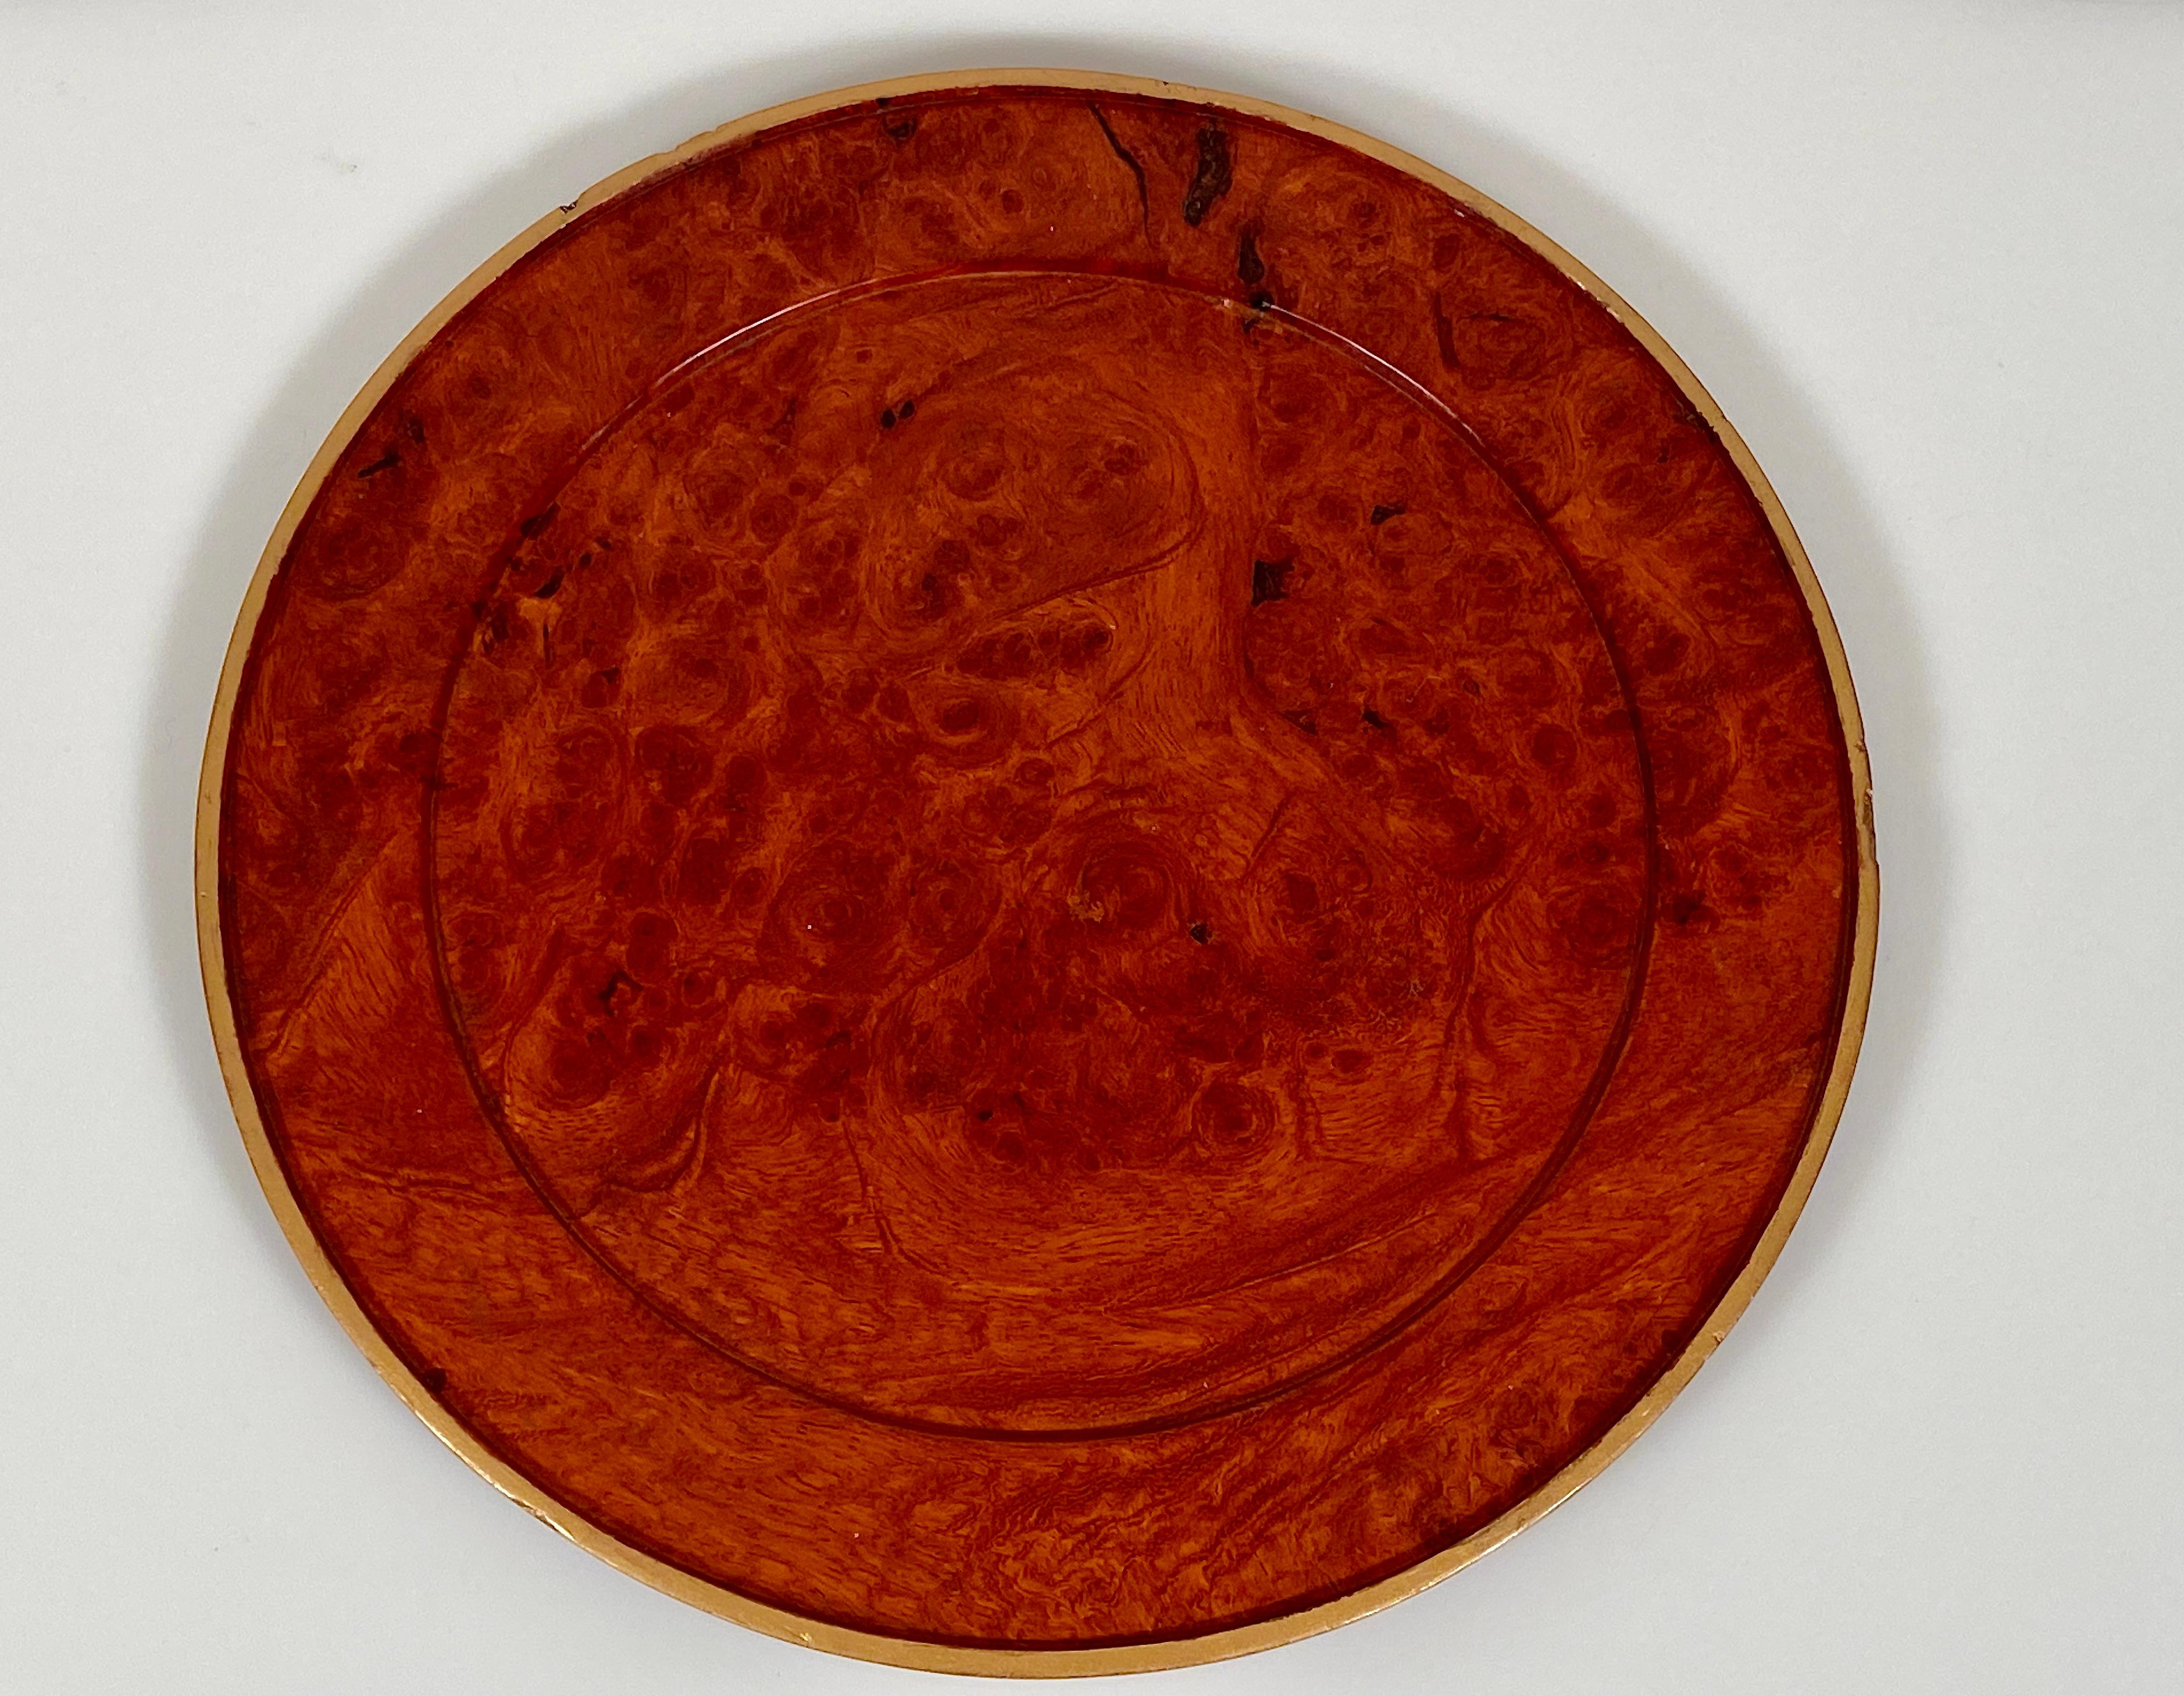 Charger Plates Burr Walnut PlaceMat Carved Wood Vintage Modernist 3